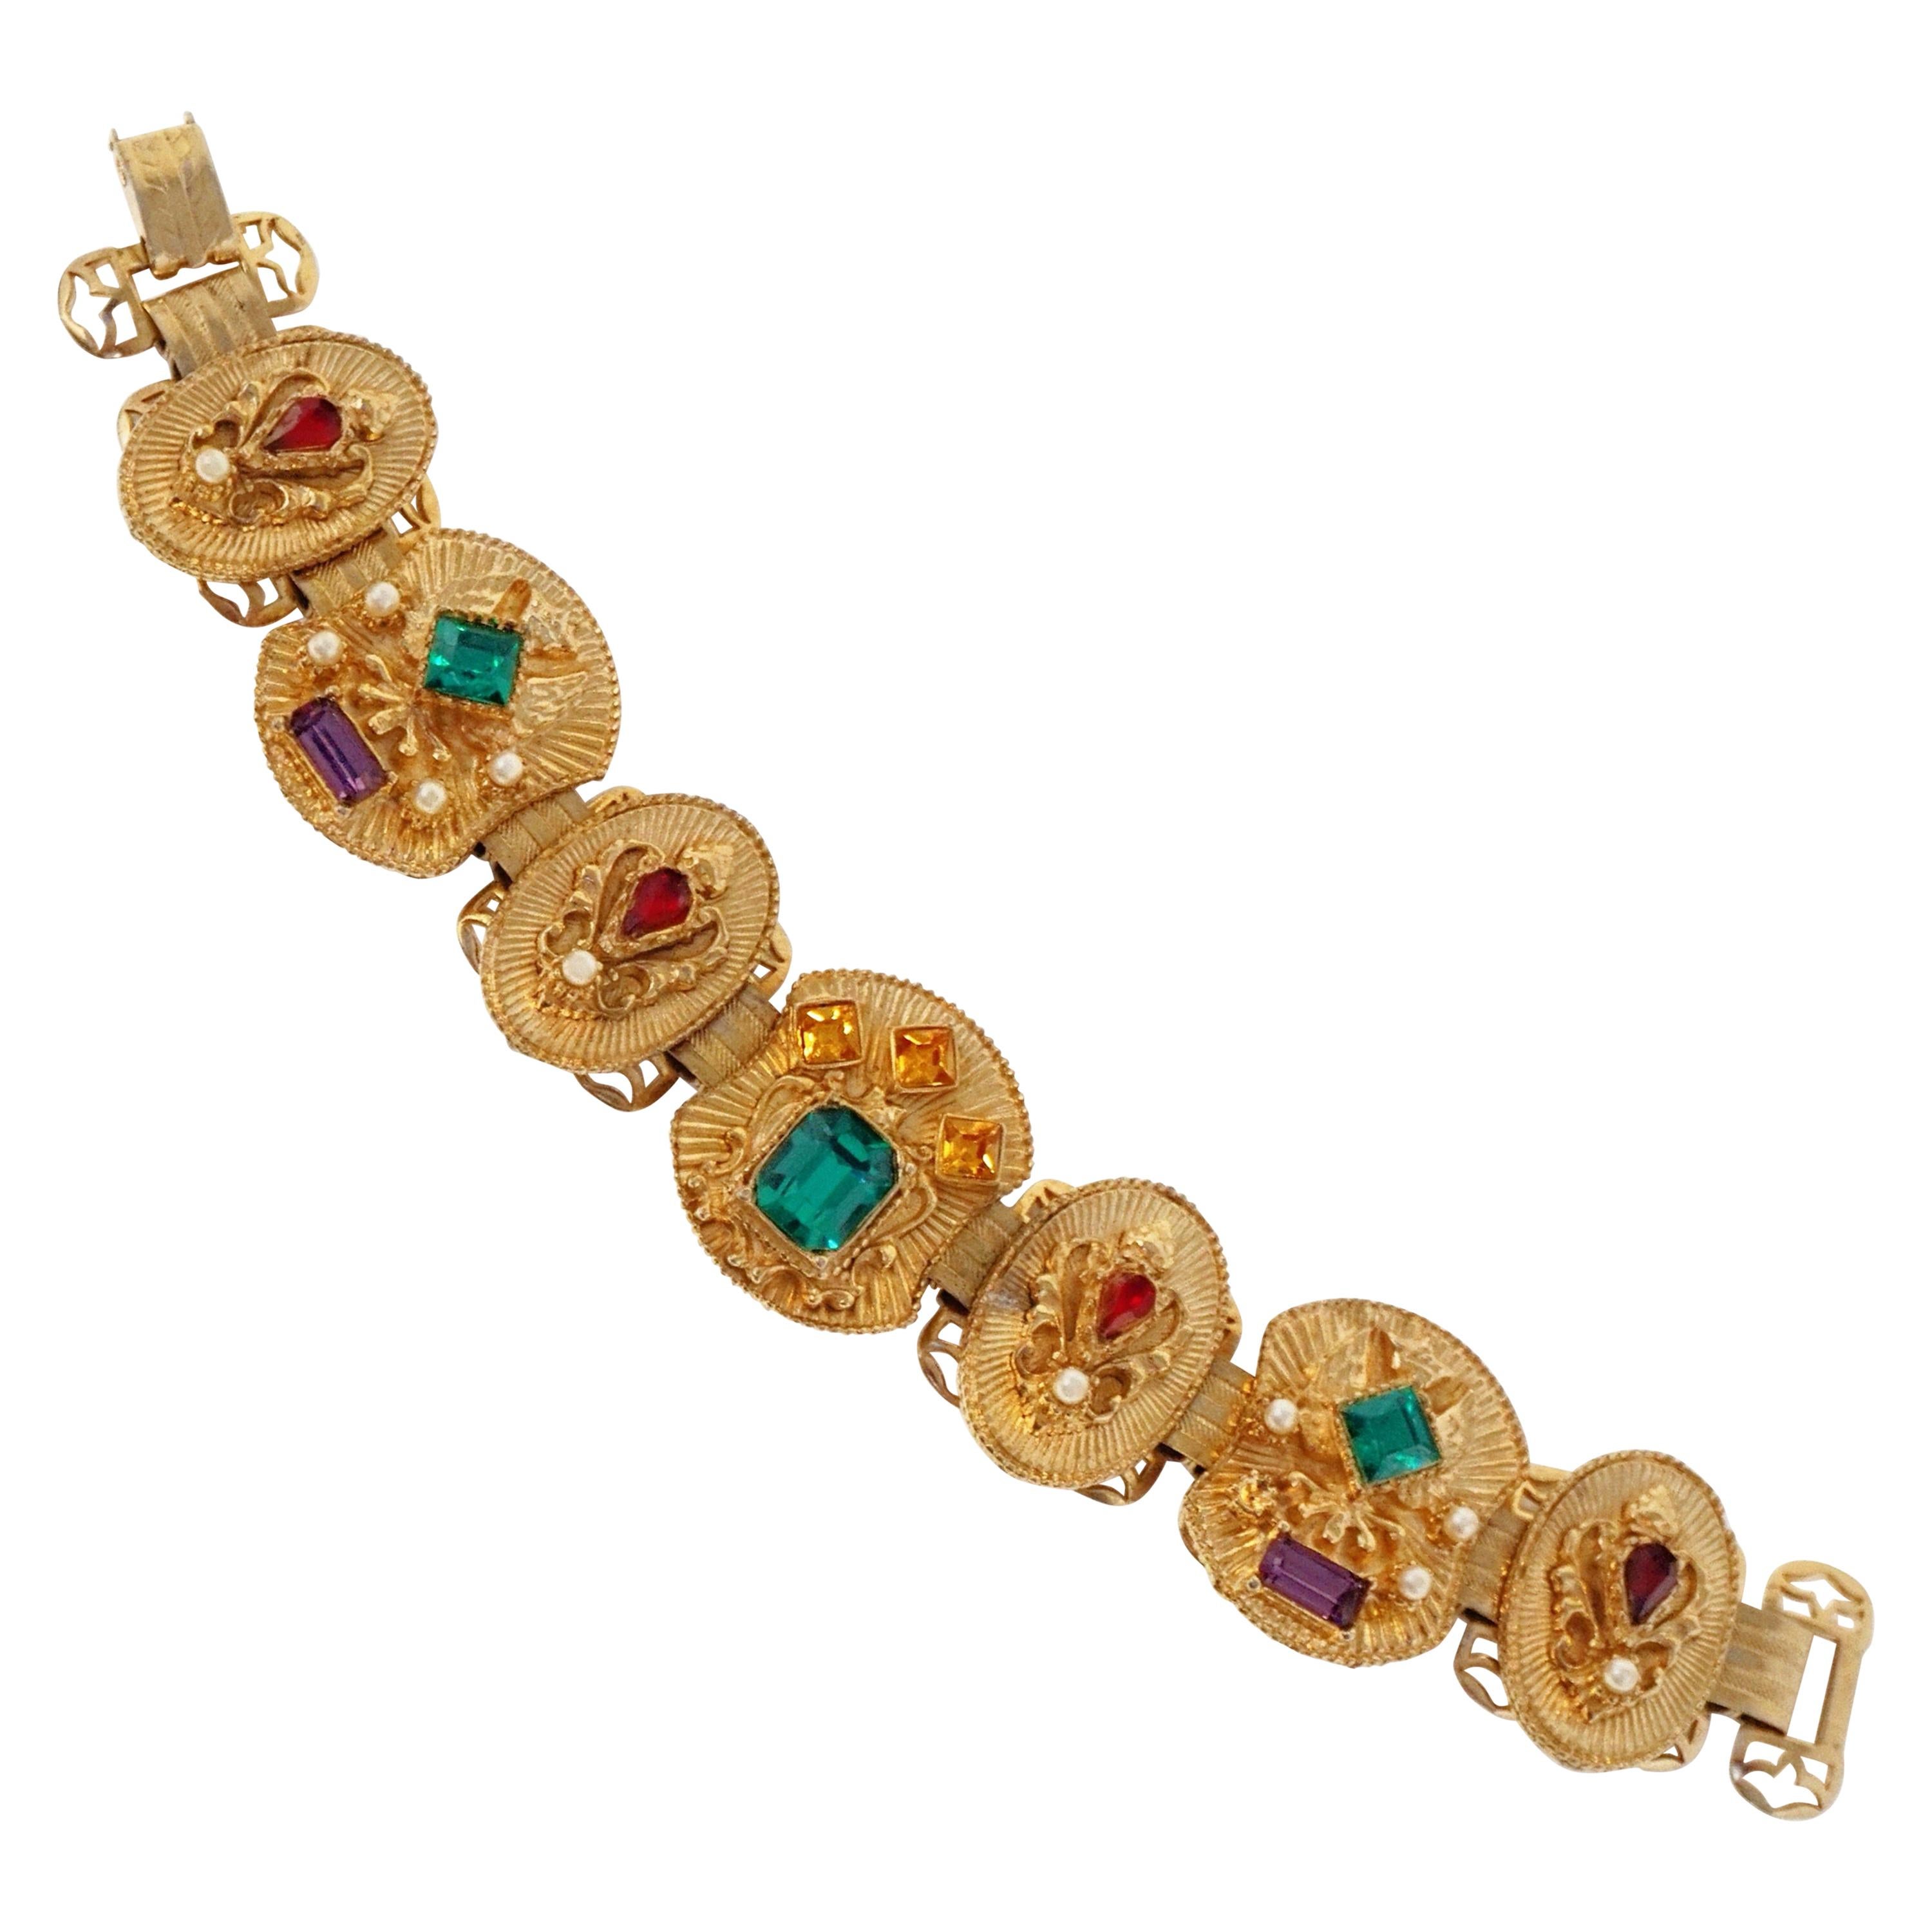 Vintage Victorian Revival Bejeweled Statement Bracelet, circa 1960s